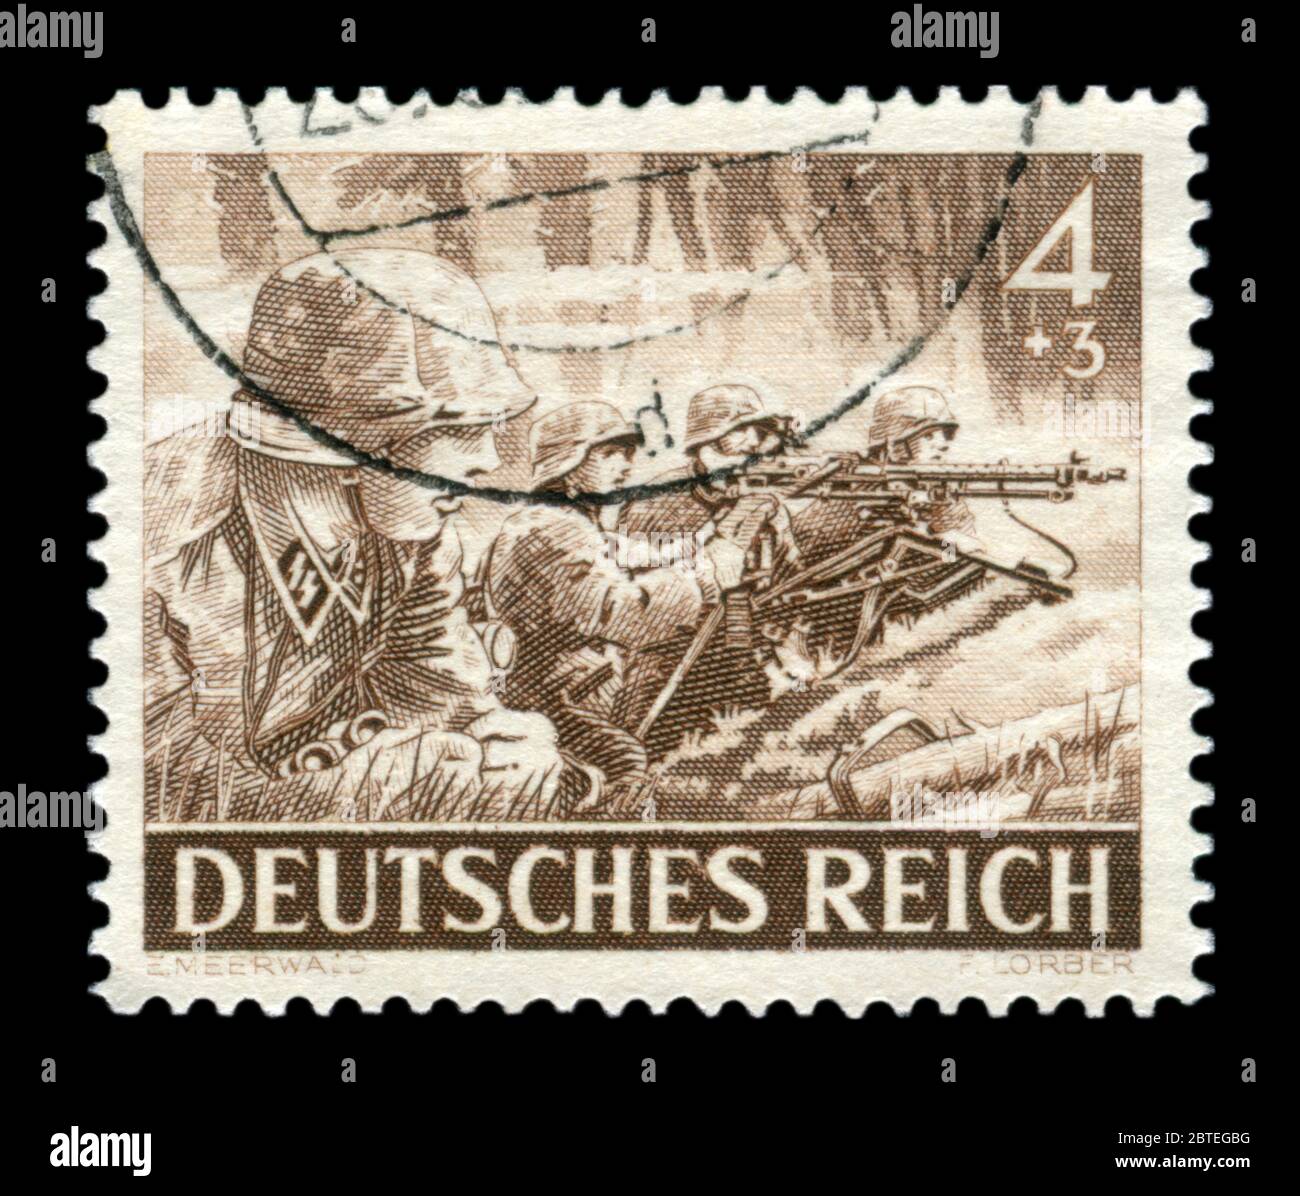 Deutsche historische Stempel: maschinengewehrschützen der Elite Division der Wehrmacht, der Waffen-SS mit Maschinengewehr mg-34, Memorial Day Ausgabe 1943, Deutschland Stockfoto